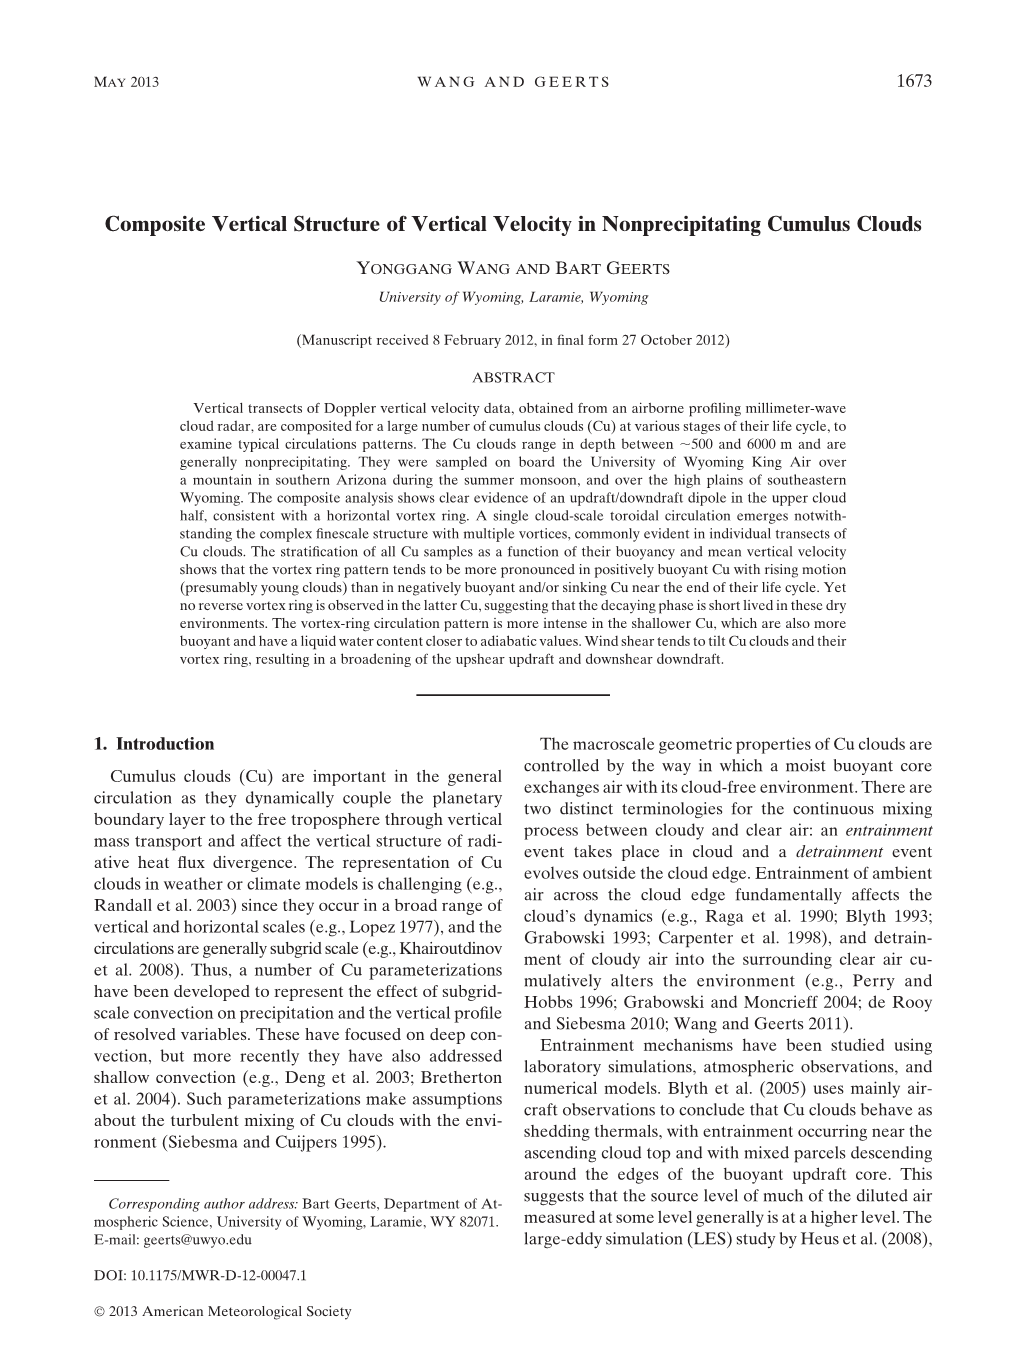 Composite Vertical Structure of Vertical Velocity in Nonprecipitating Cumulus Clouds